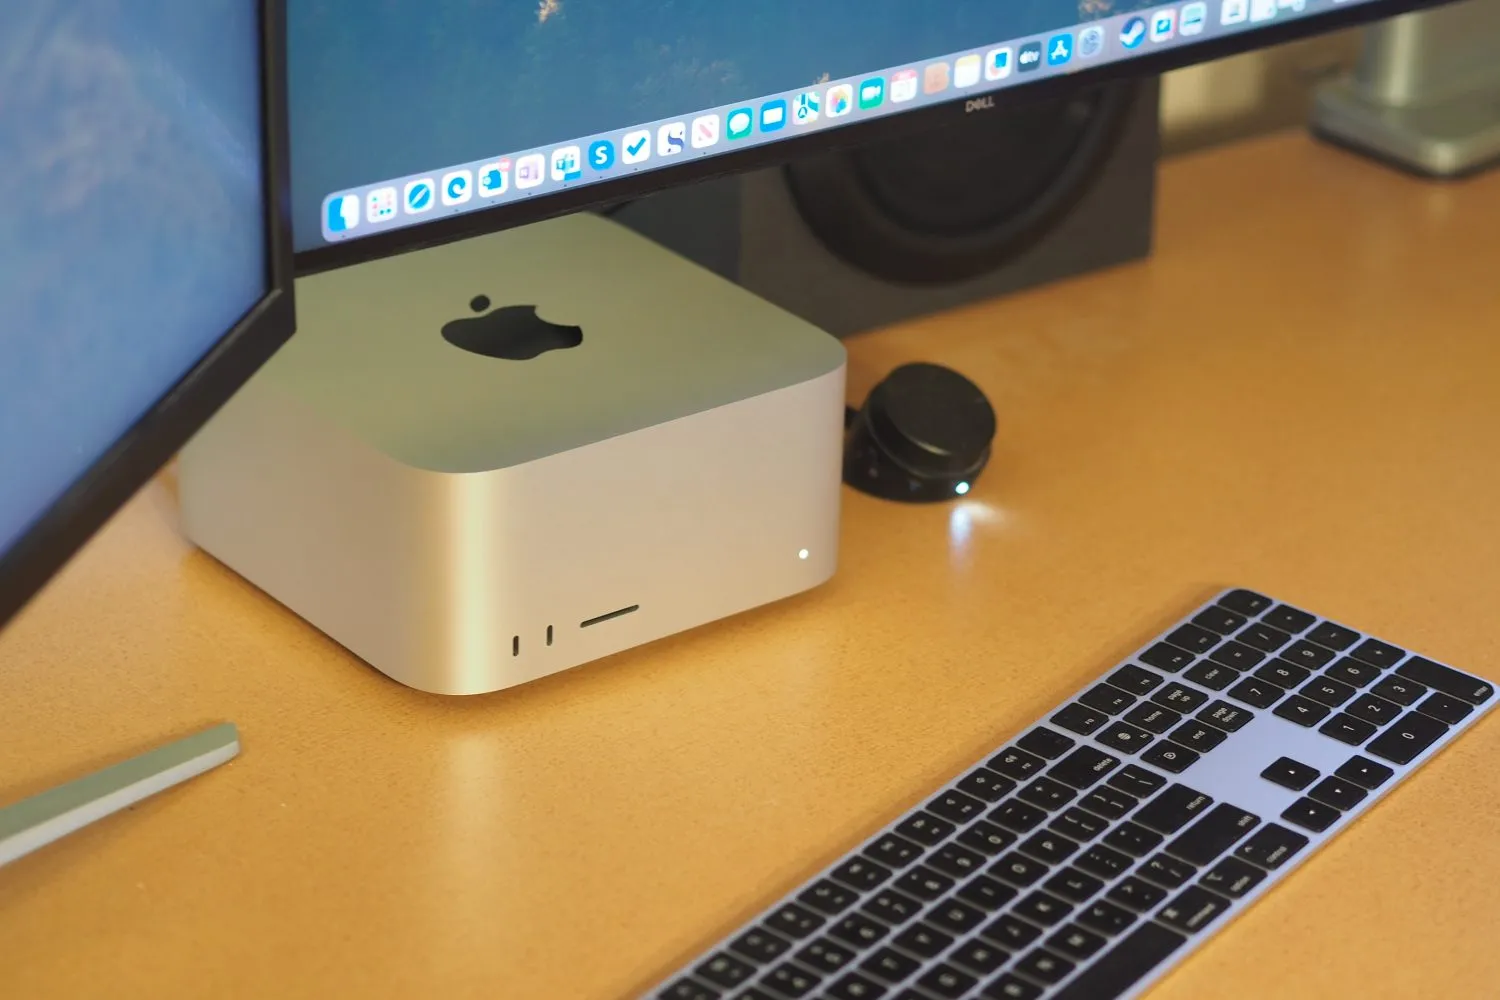 Вид сверху Apple Mac Studio, показывающий персональный компьютер и клавиатуру.